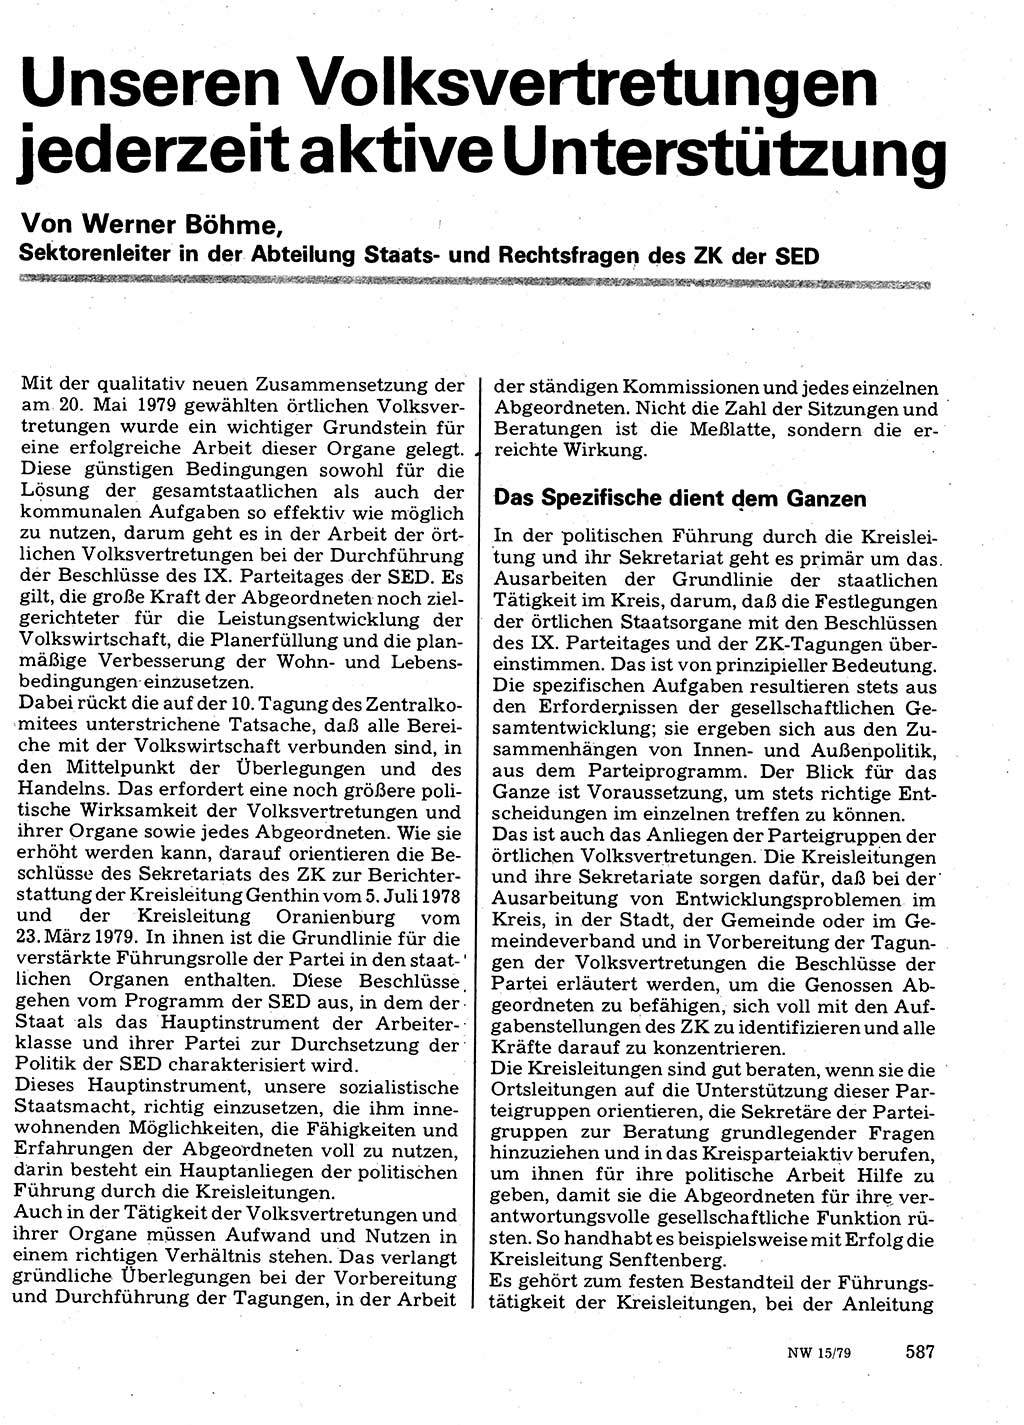 Neuer Weg (NW), Organ des Zentralkomitees (ZK) der SED (Sozialistische Einheitspartei Deutschlands) für Fragen des Parteilebens, 34. Jahrgang [Deutsche Demokratische Republik (DDR)] 1979, Seite 587 (NW ZK SED DDR 1979, S. 587)